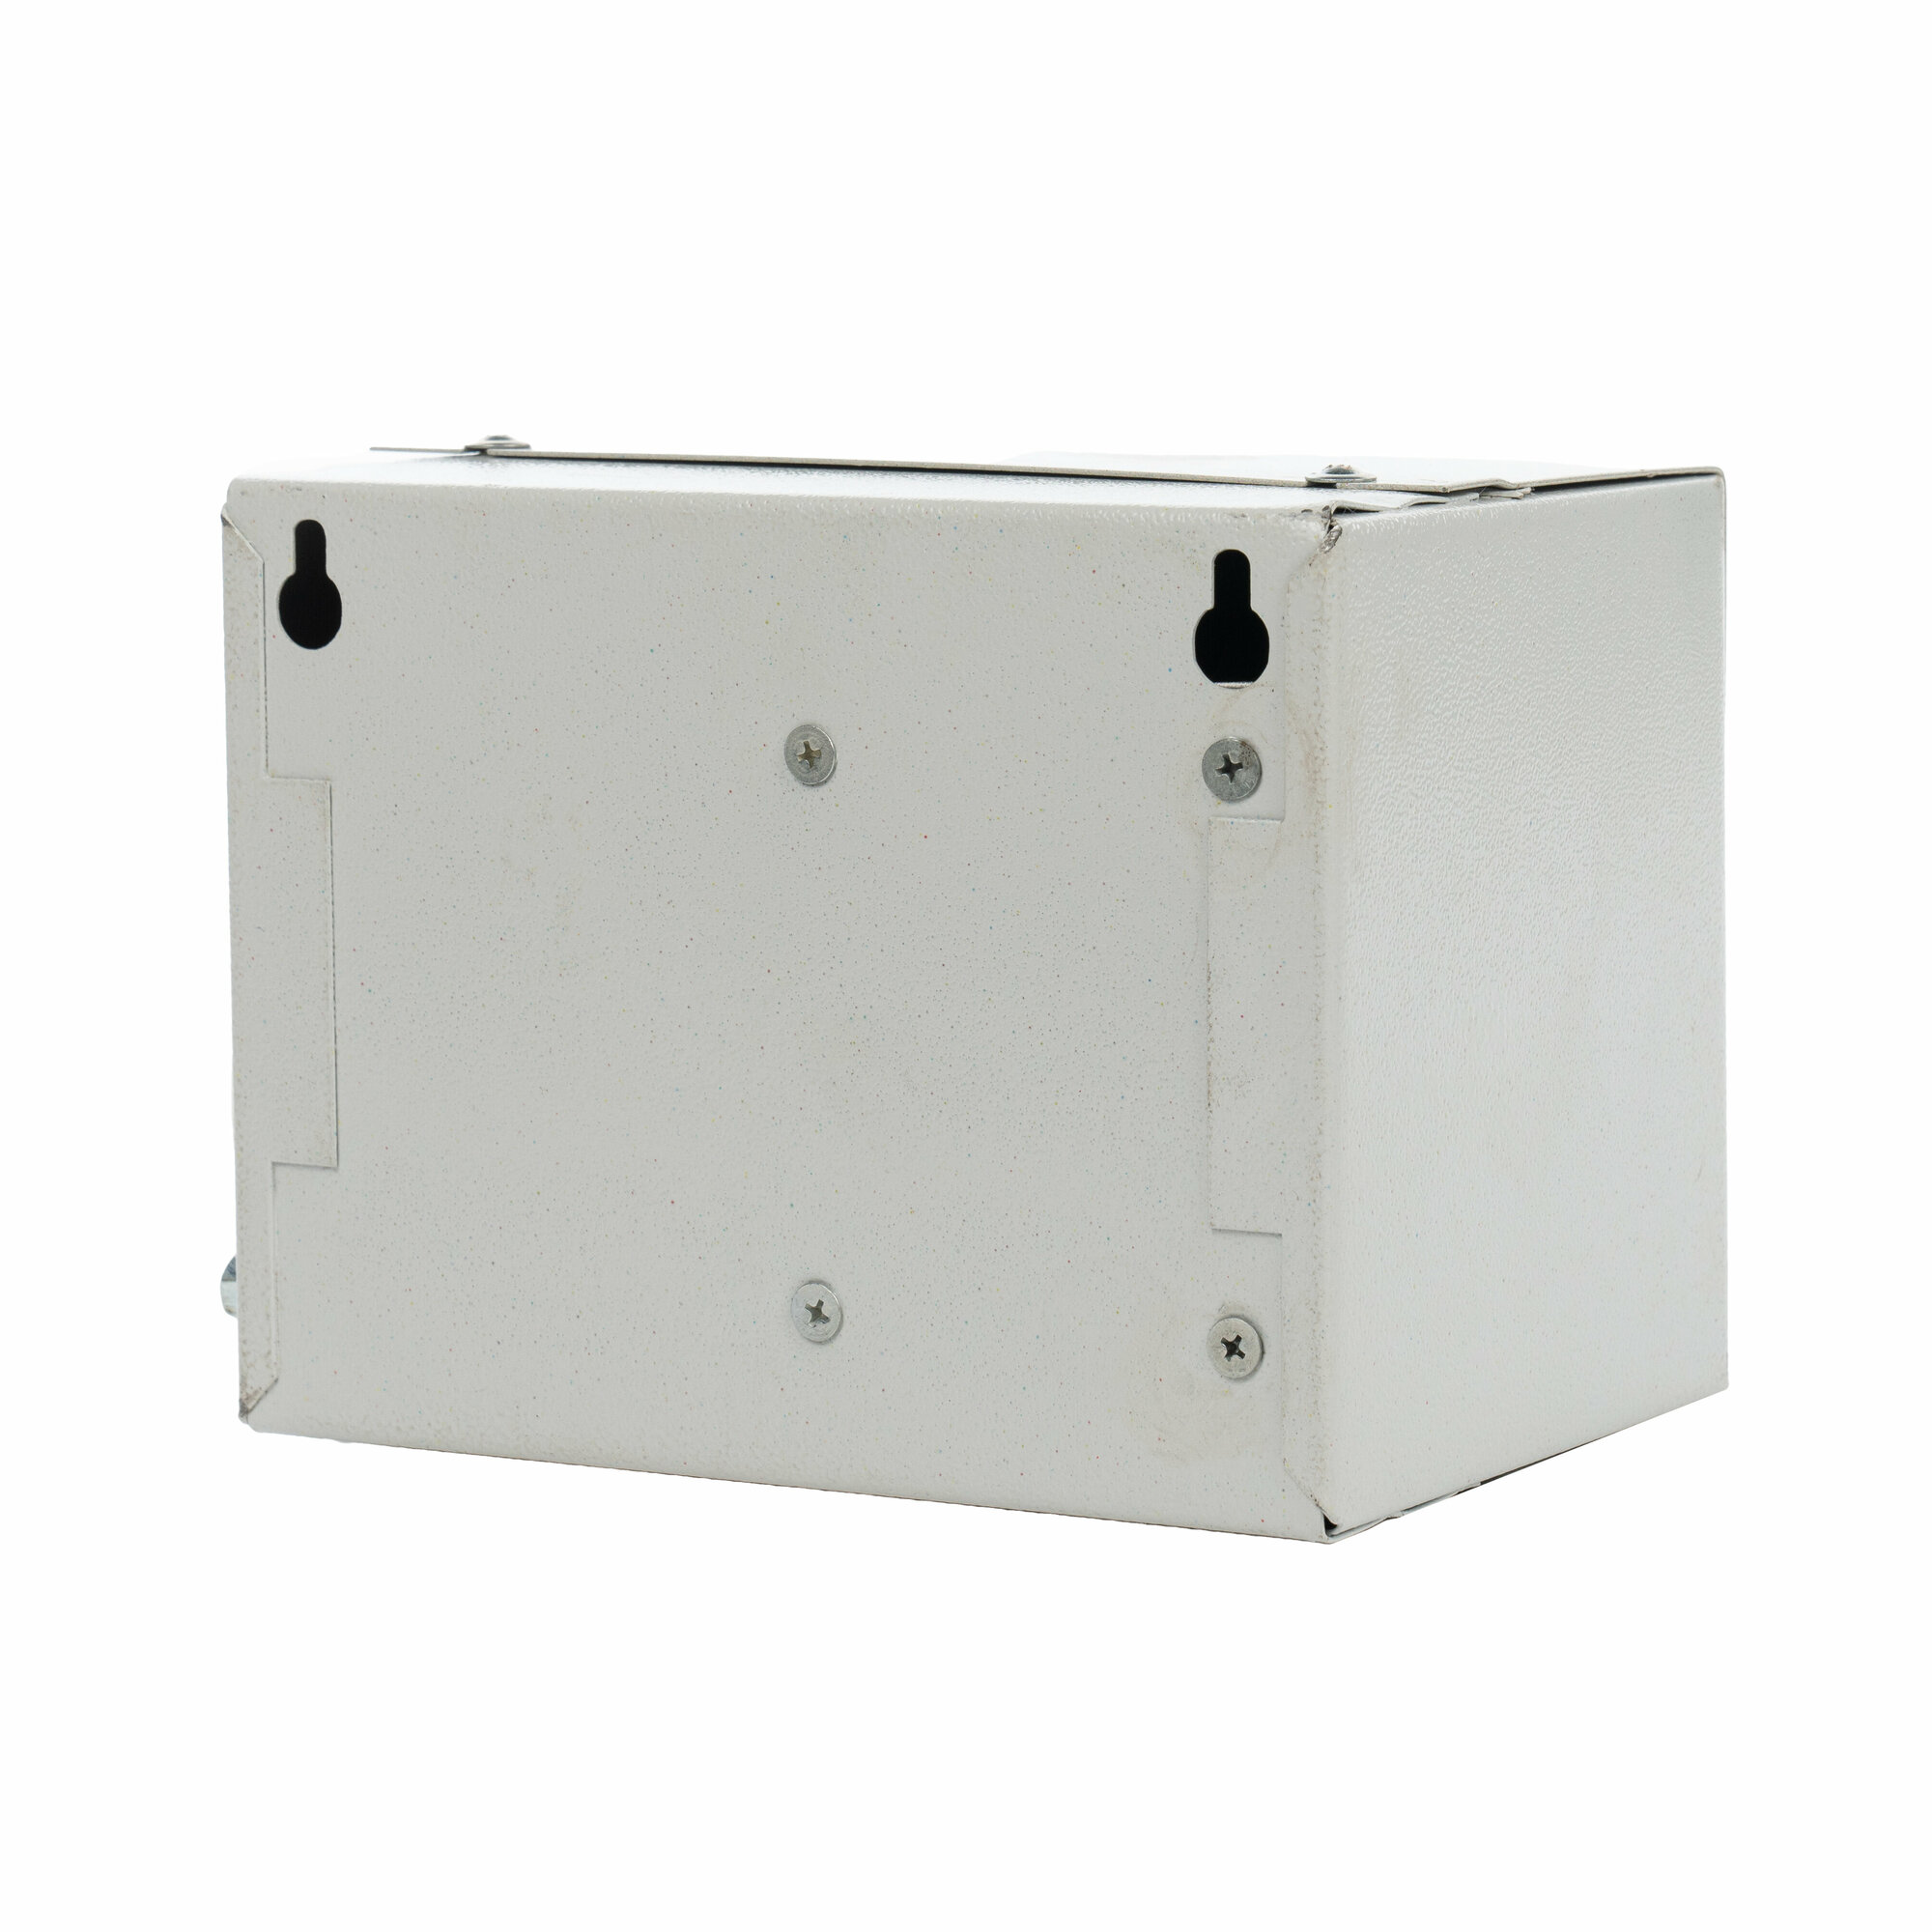 Ящик с понижающим трансформатором электрический навесной МЭК Электрика ЯТП-0,25 380/24 IP31 (3 авт) (225x150x125) металлический корпус